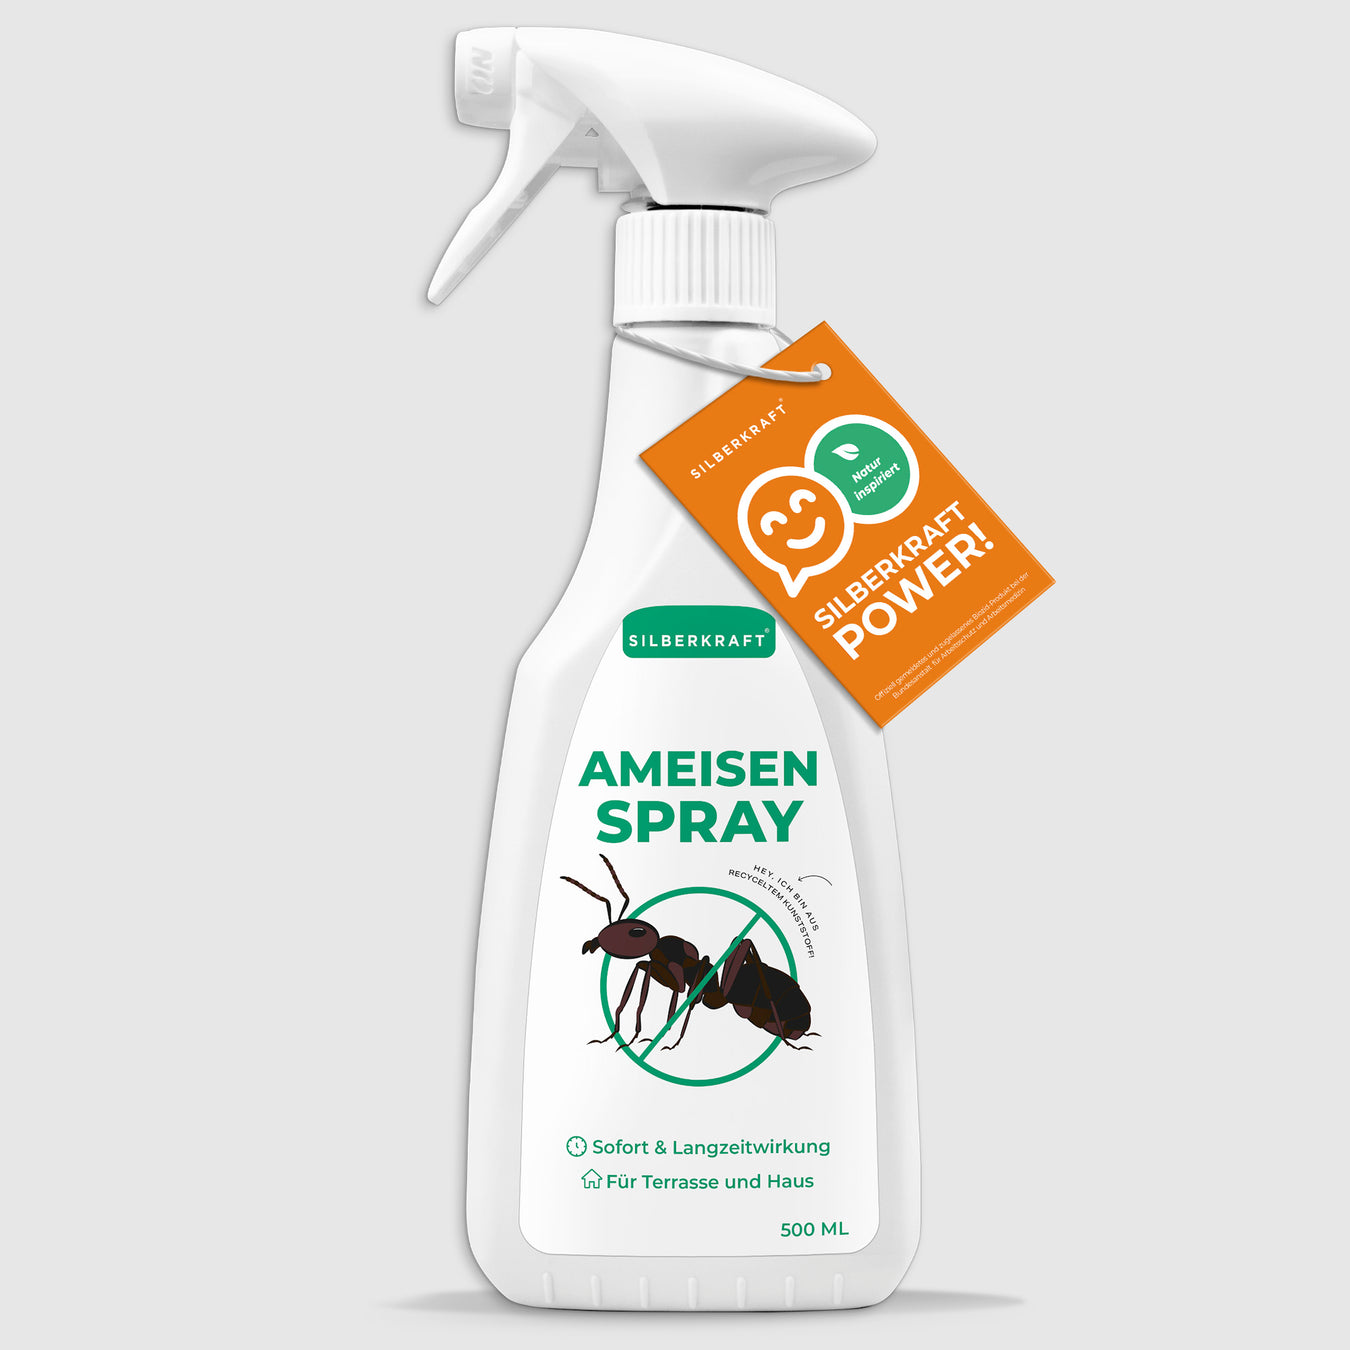 Ameisen Spray